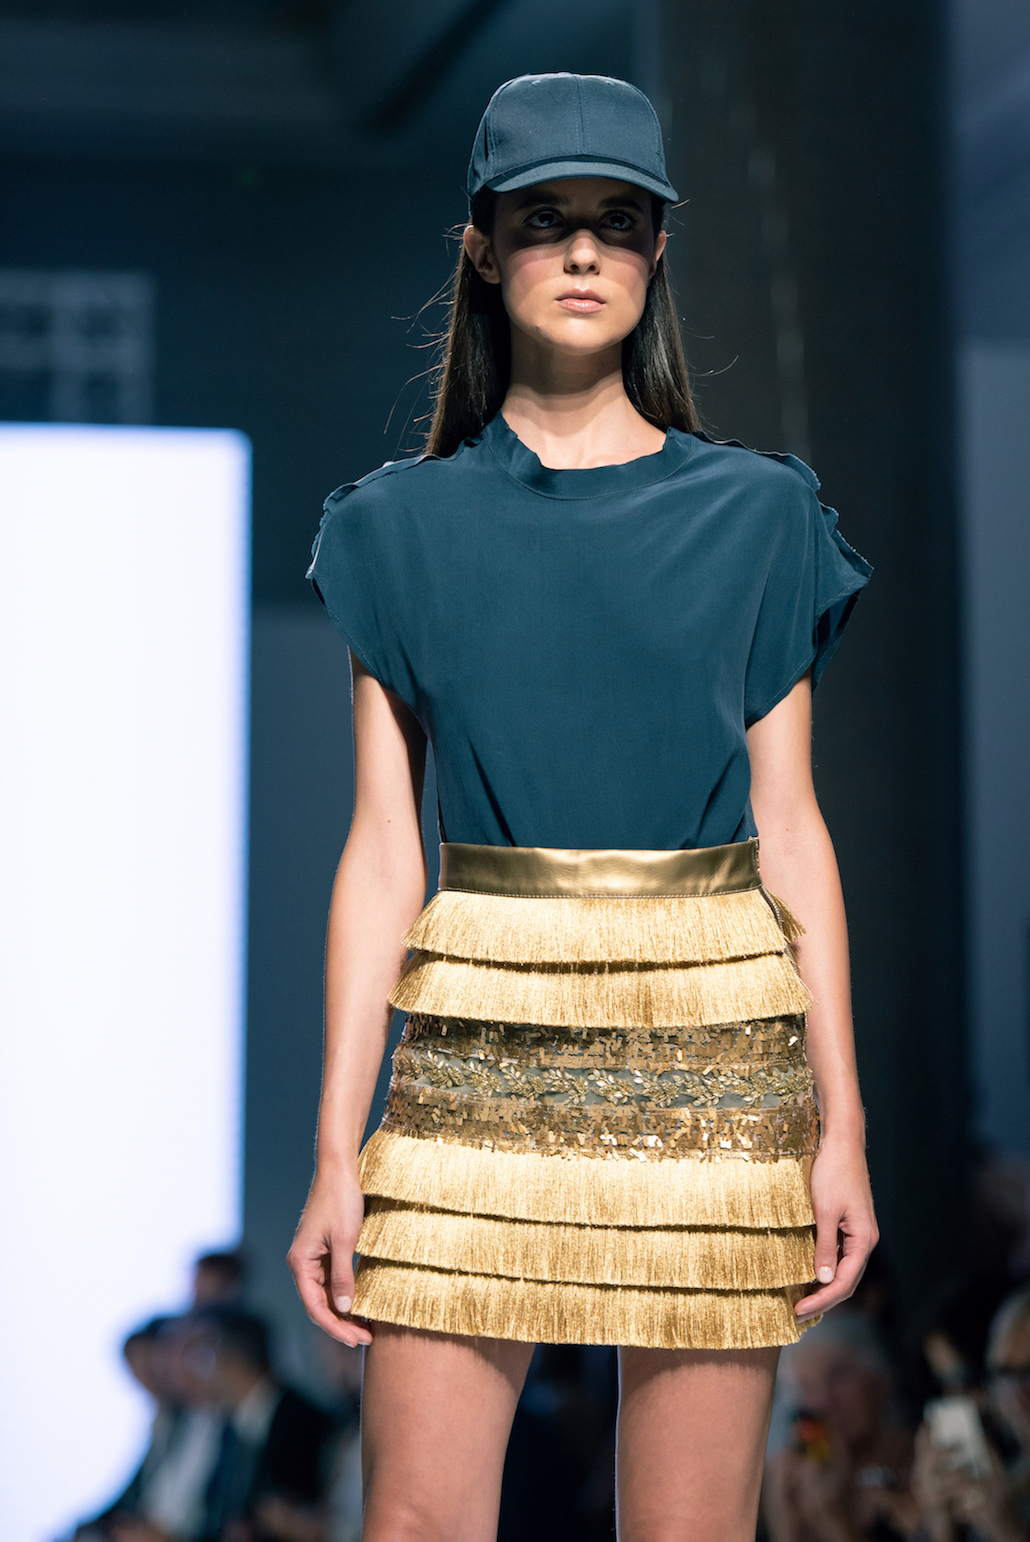 Intesa San Paolo porta la moda in filiale con Next Trend